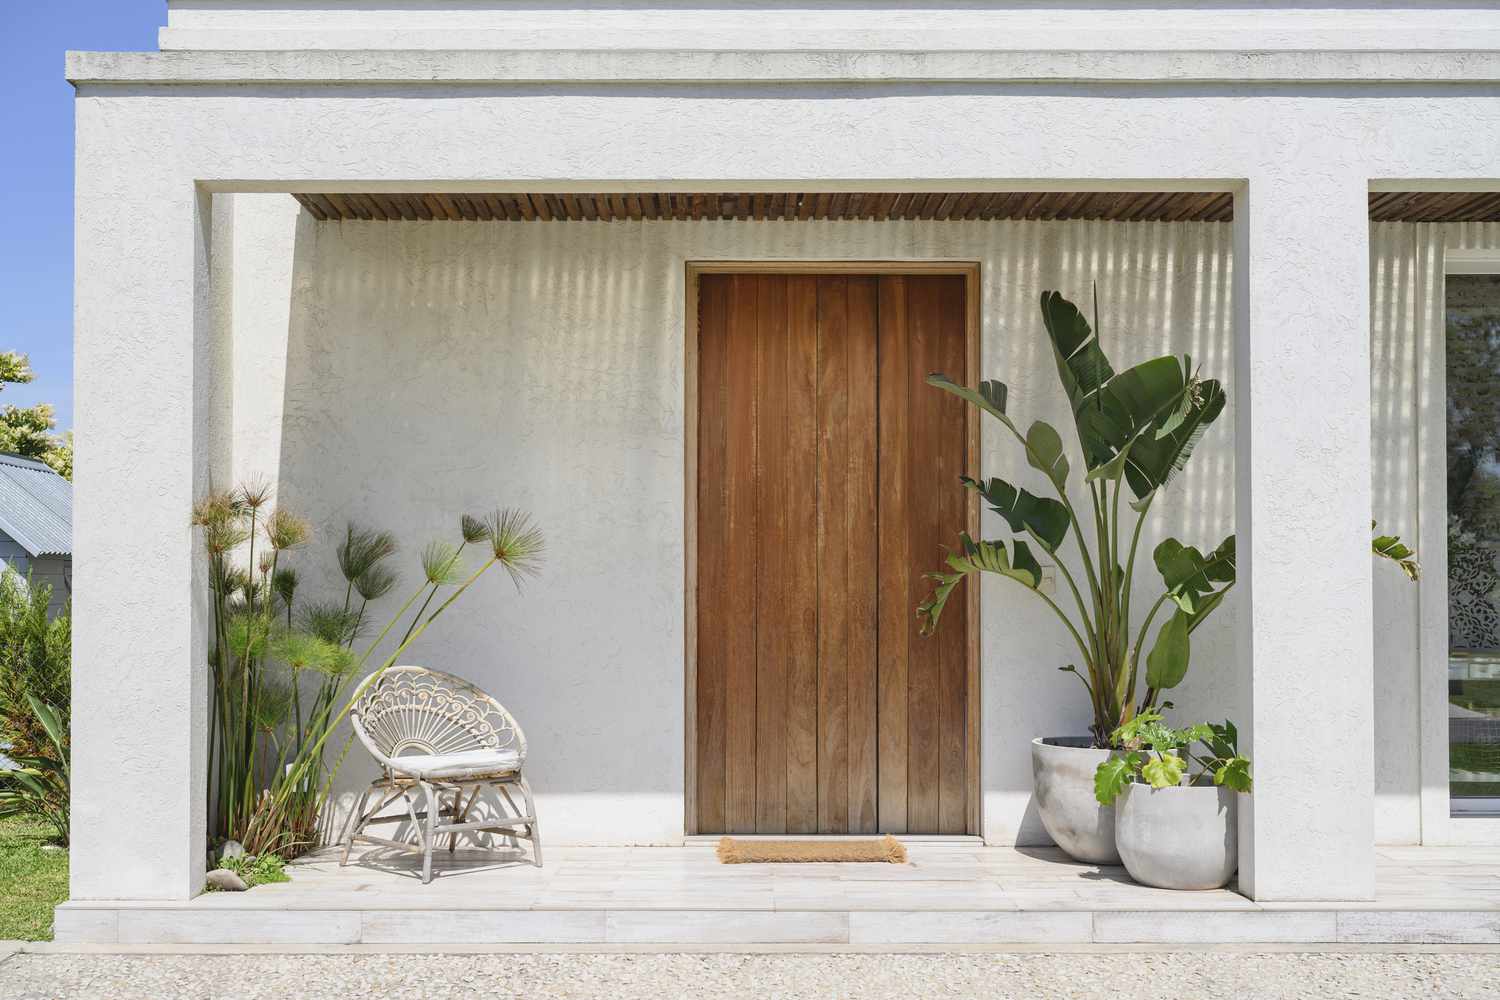 Primer plano de la entrada de una casa moderna de Buenos Aires con una silla y plantas en macetas en el porche a ambos lados de la puerta principal.